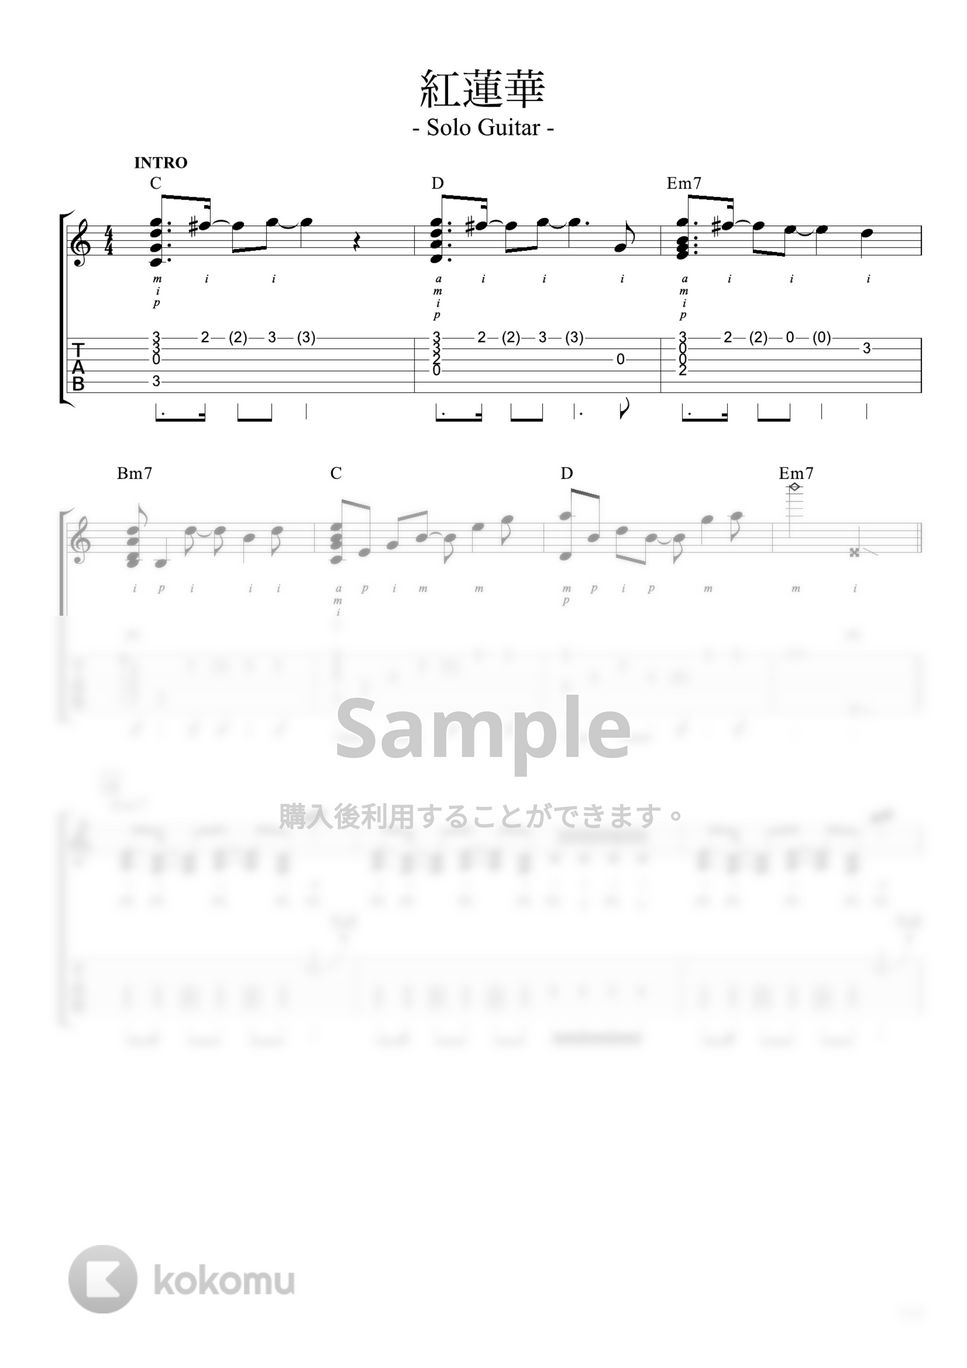 『鬼滅の刃』OP - 紅蓮華 (ソロ・ギター / 初心者〜中級) by Strings Guitar School